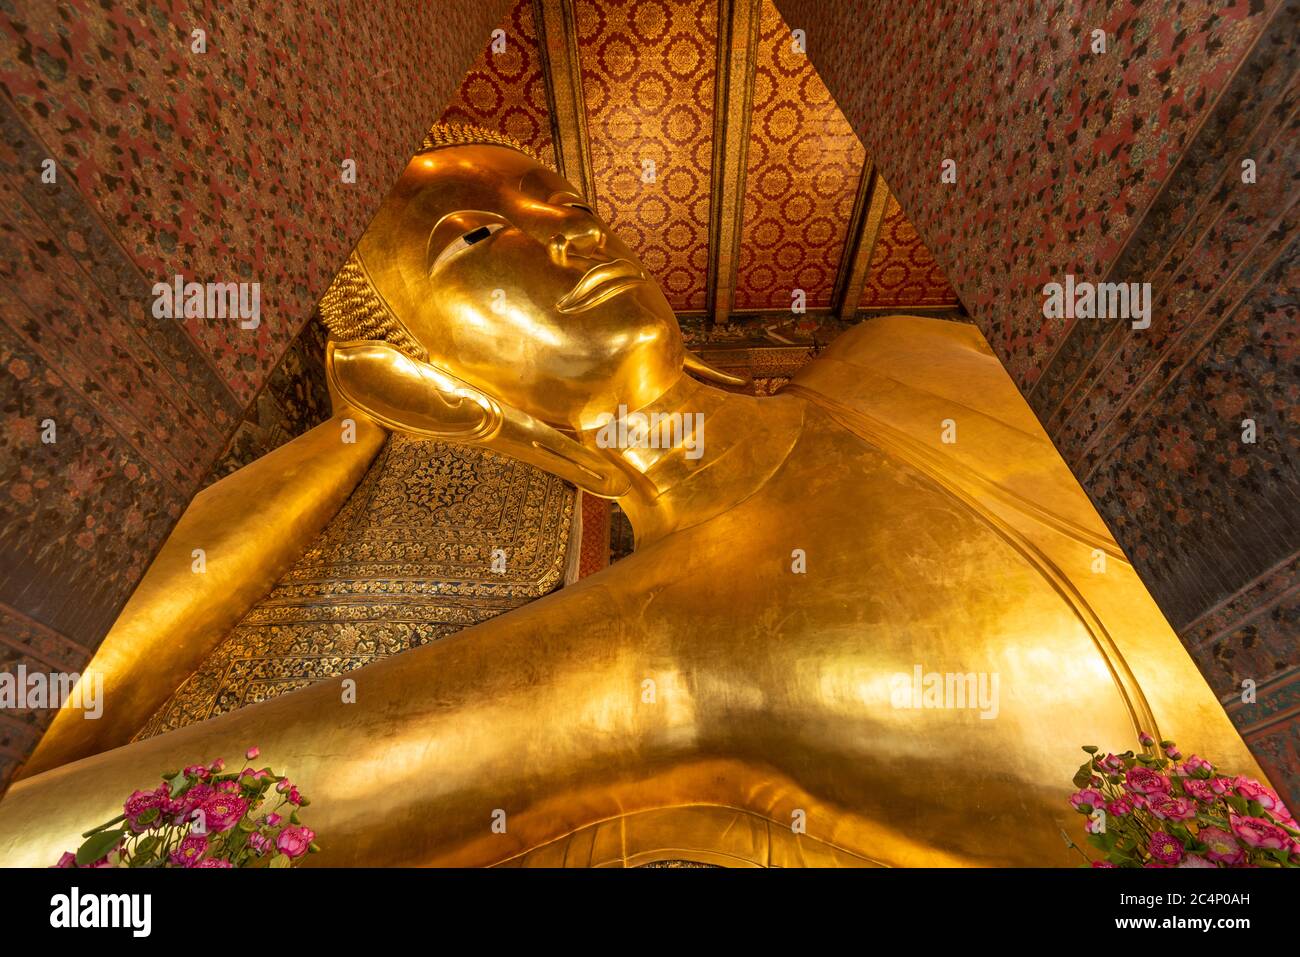 BANGKOK, THAÏLANDE - 23 SEPTEMBRE 2015 : le Bouddha couché du temple Wat Pho à Bangkok. Le temple a été fondé au XVIe siècle et est résidentiel Banque D'Images